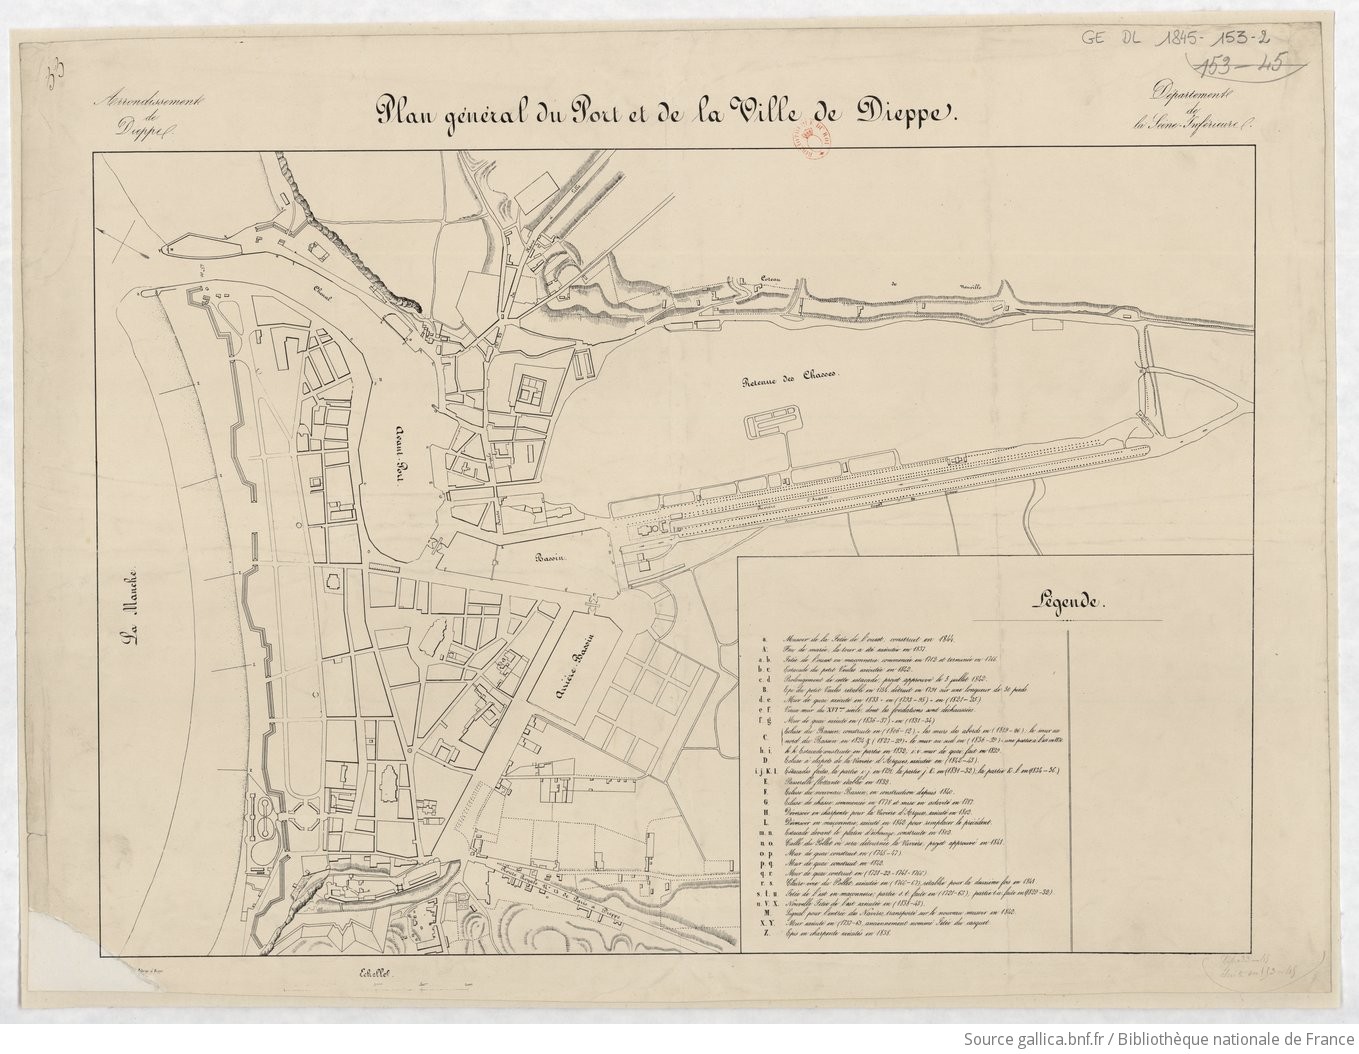 Plan général du port et de la ville de Dieppe